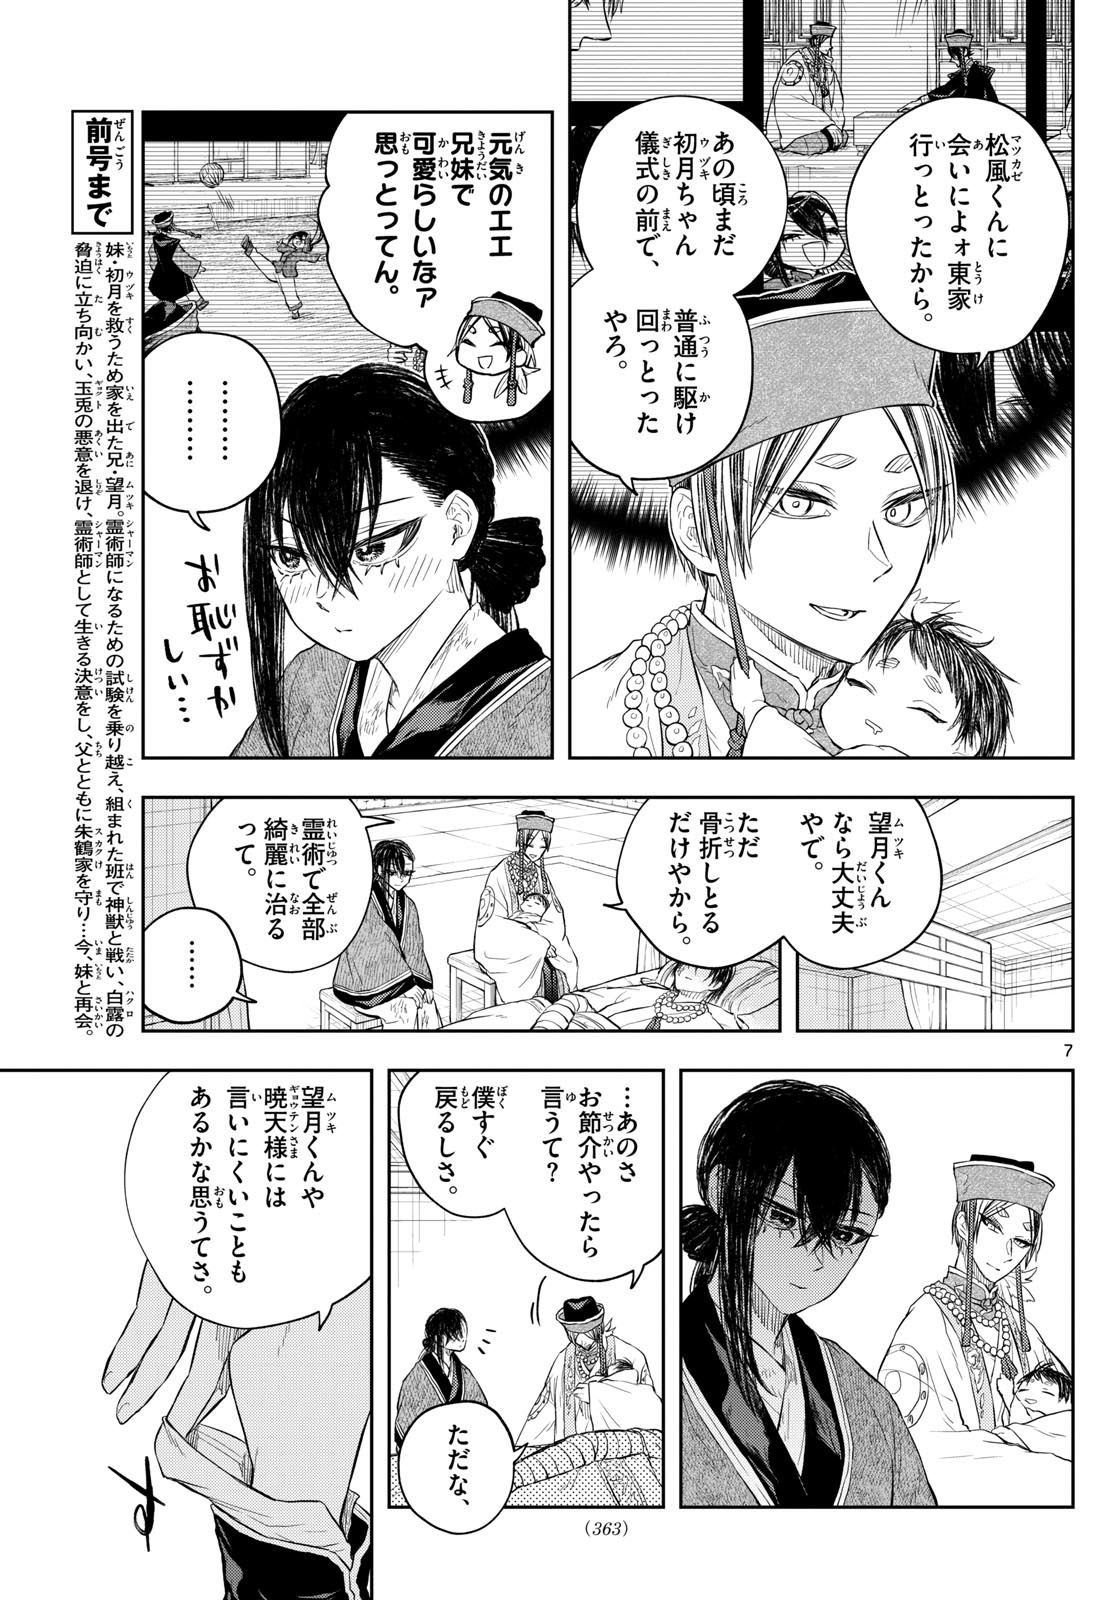 Akatsuki Jihen - Chapter 46 - Page 7